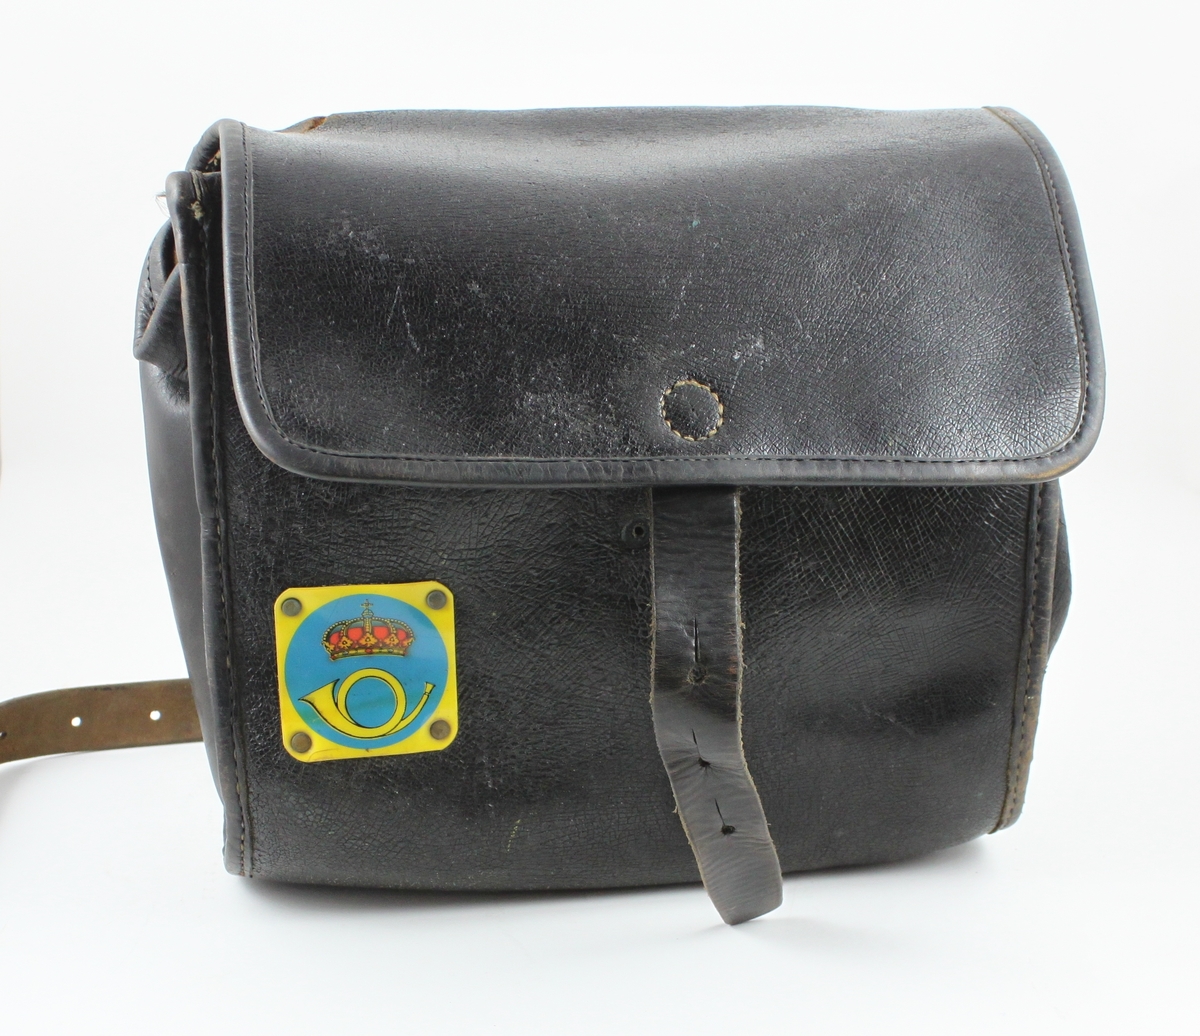 Brevbärarväska av brunt läder, med ställbar axelrem.
Påväskans kanter är en förstärkning av ljusare läder påsydd.
Överväskans öppning fälldes en klaff, som fastgjordes med en läderrem
medtre hål. I ett av hålen trycktes en metallknopp genom från
väskanssida. På väskans framsida sitter en plastbricka med 1937
årspostemblem i gult, blått och rött mot ett cirkulärt blått fält
motgul bakgrund. Väskan saknar knopp, och är lagad. Trasig vid
högraremfästet. Artikelnummer 1941 (IF 1949) och 620.11 (IF 1961).